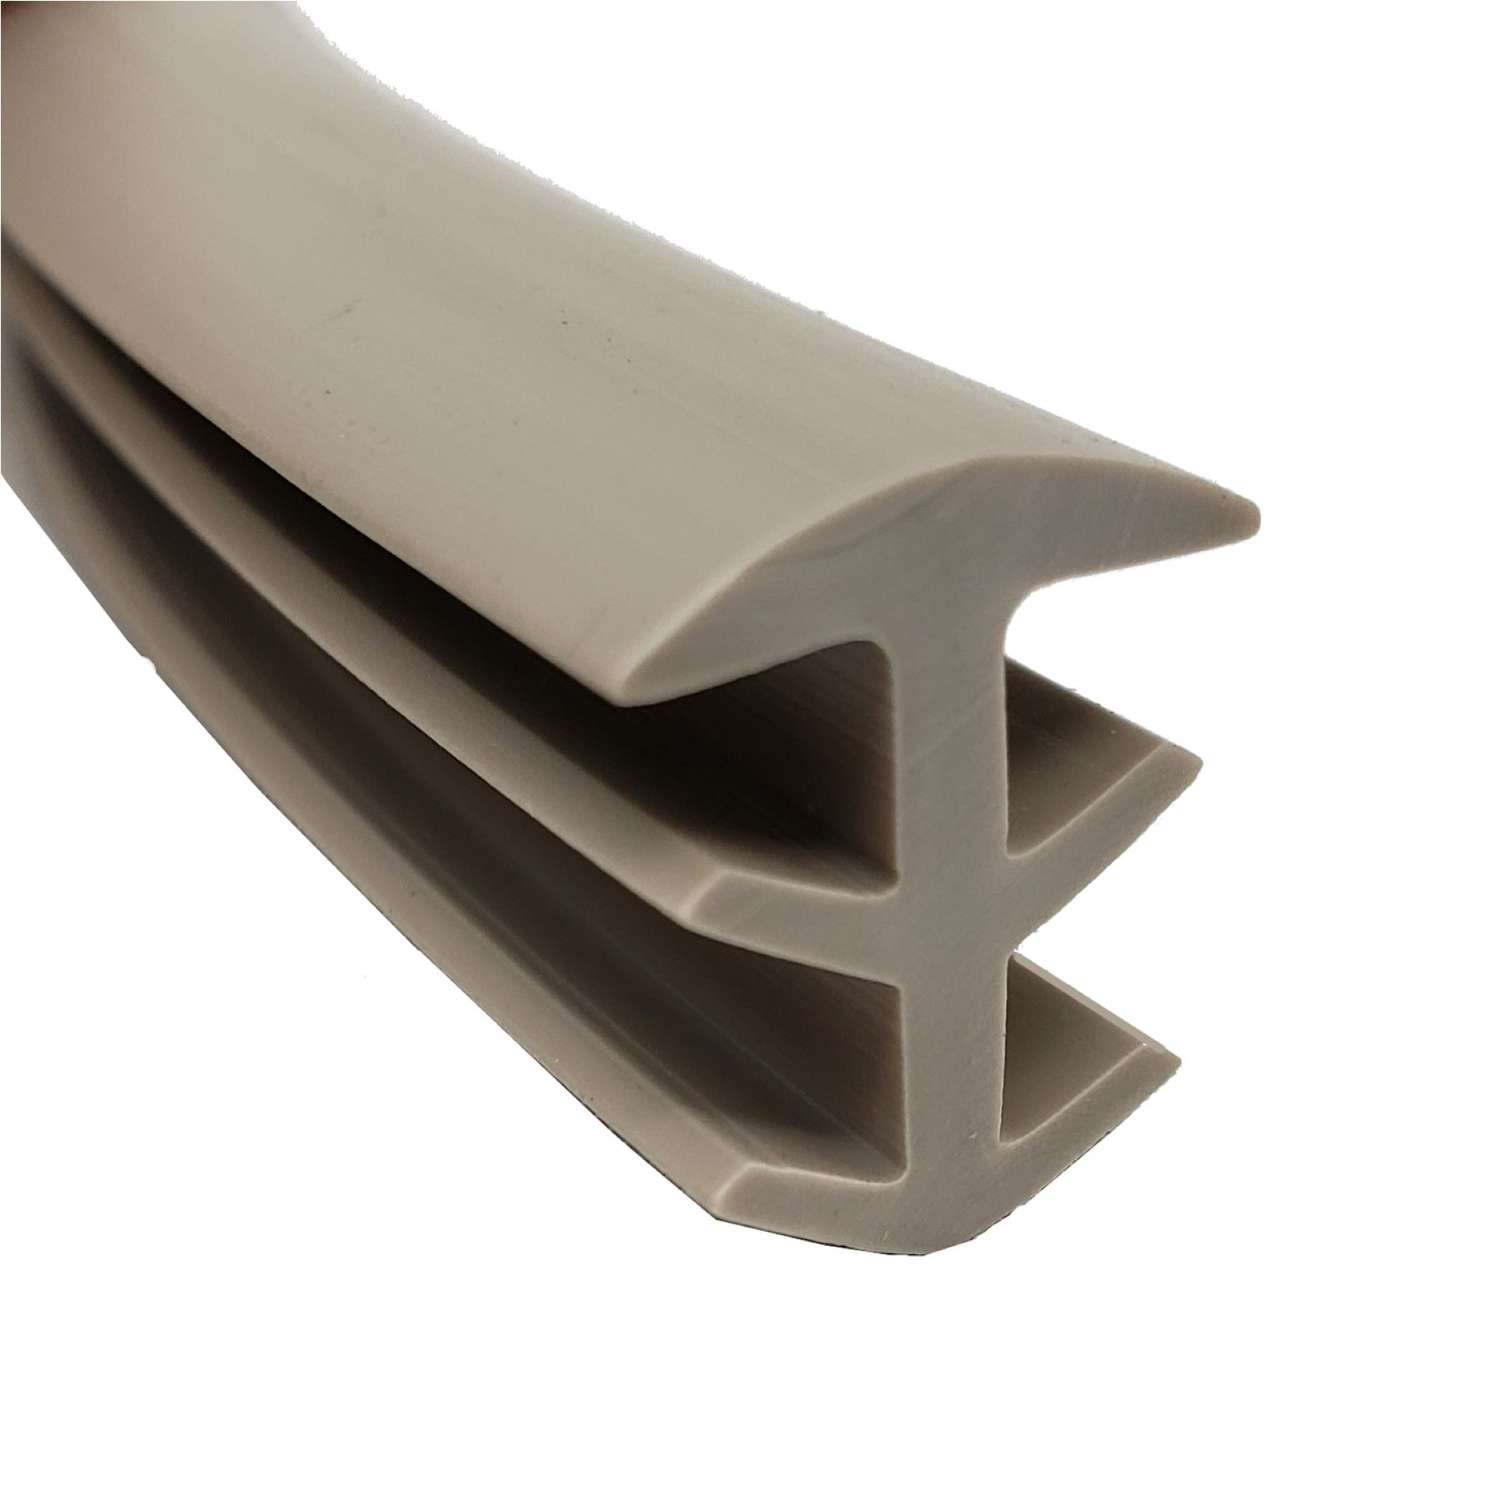 Trim-A-Slab Flexible PVC Concrete Expansion Joint Replacement